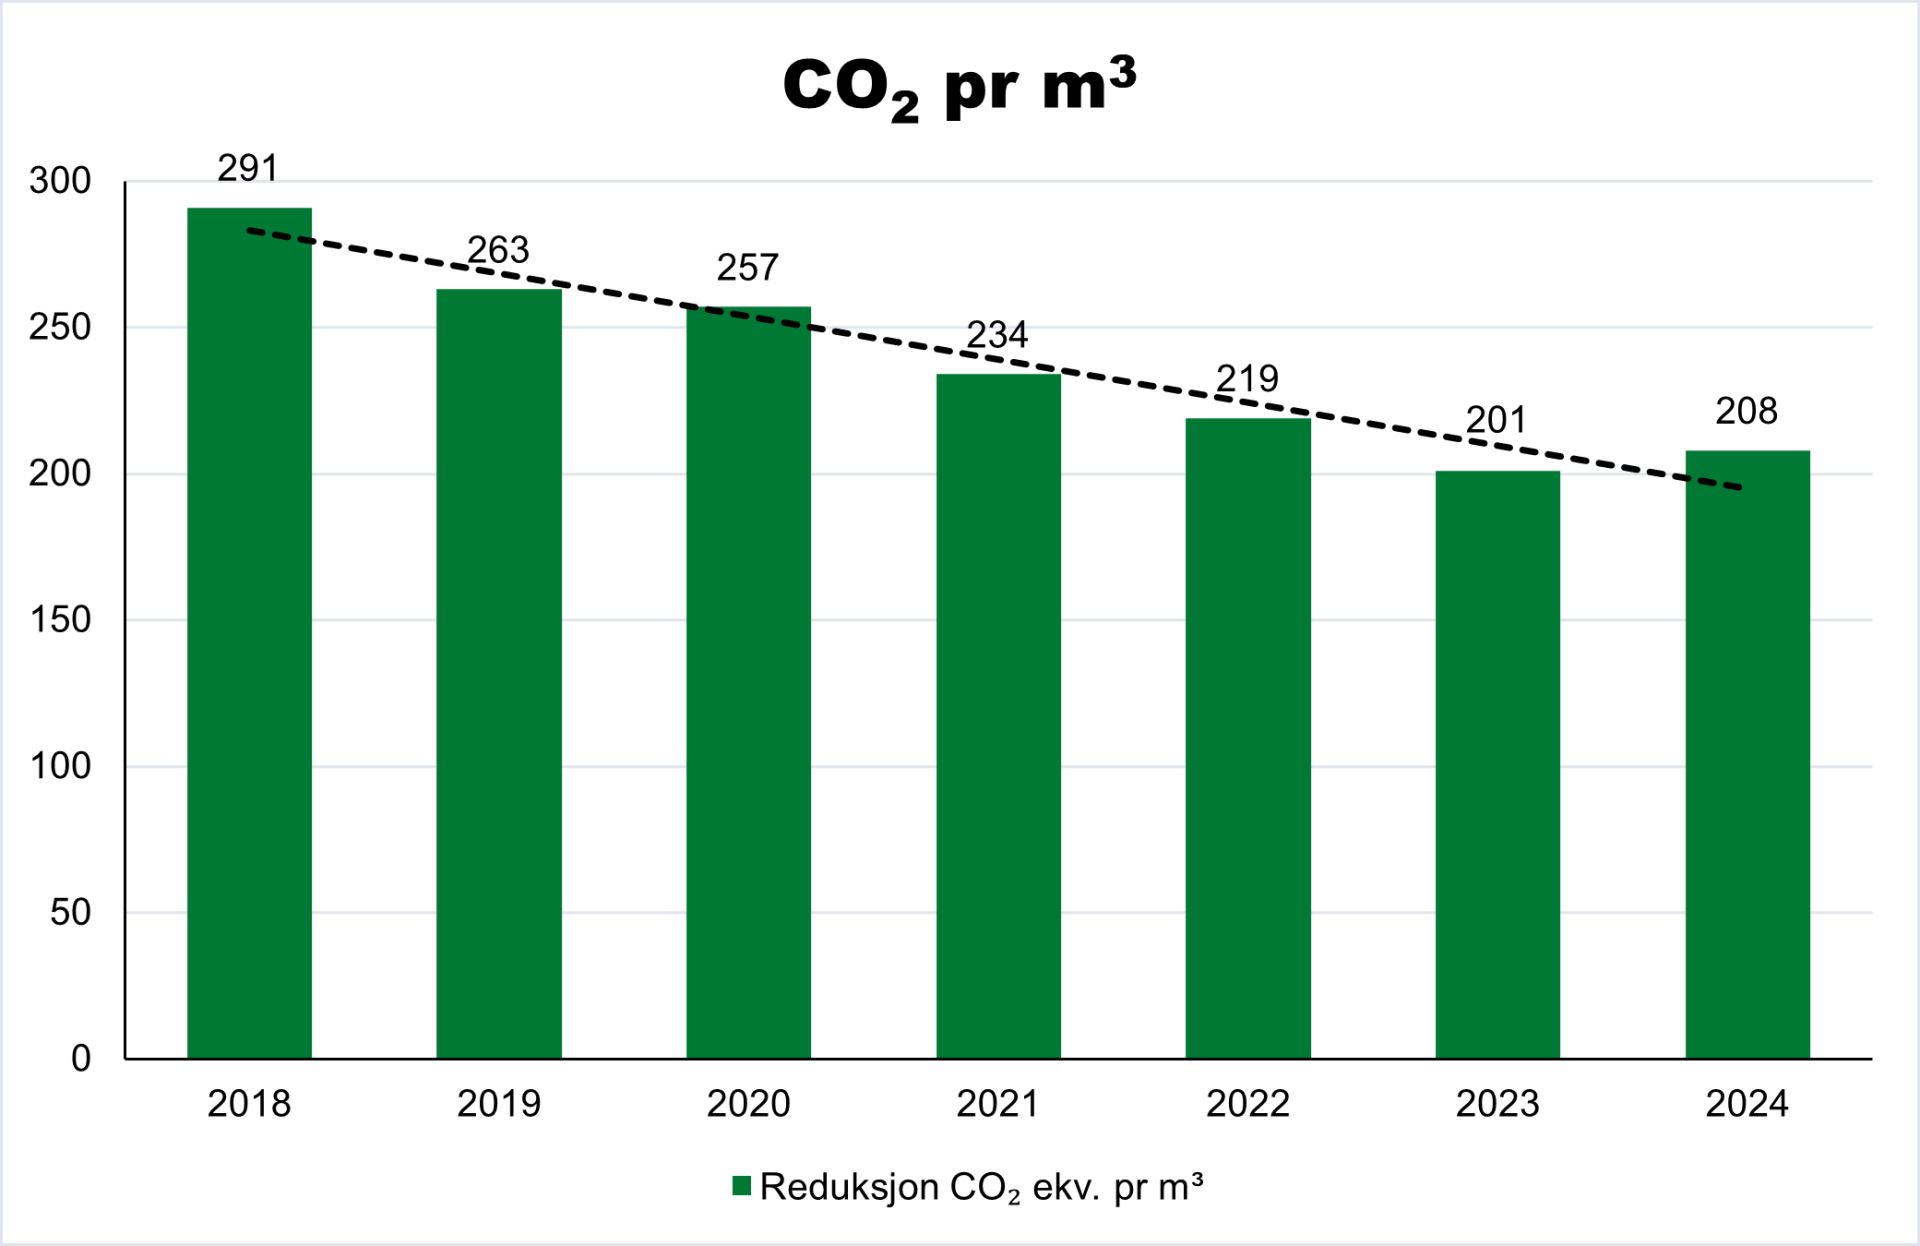 Graf som viser god nedgang i CO2-utslipp per m3 betong produsert fra 2018 til 2014. (291kg i 2018, ned til 208kg i 2024)